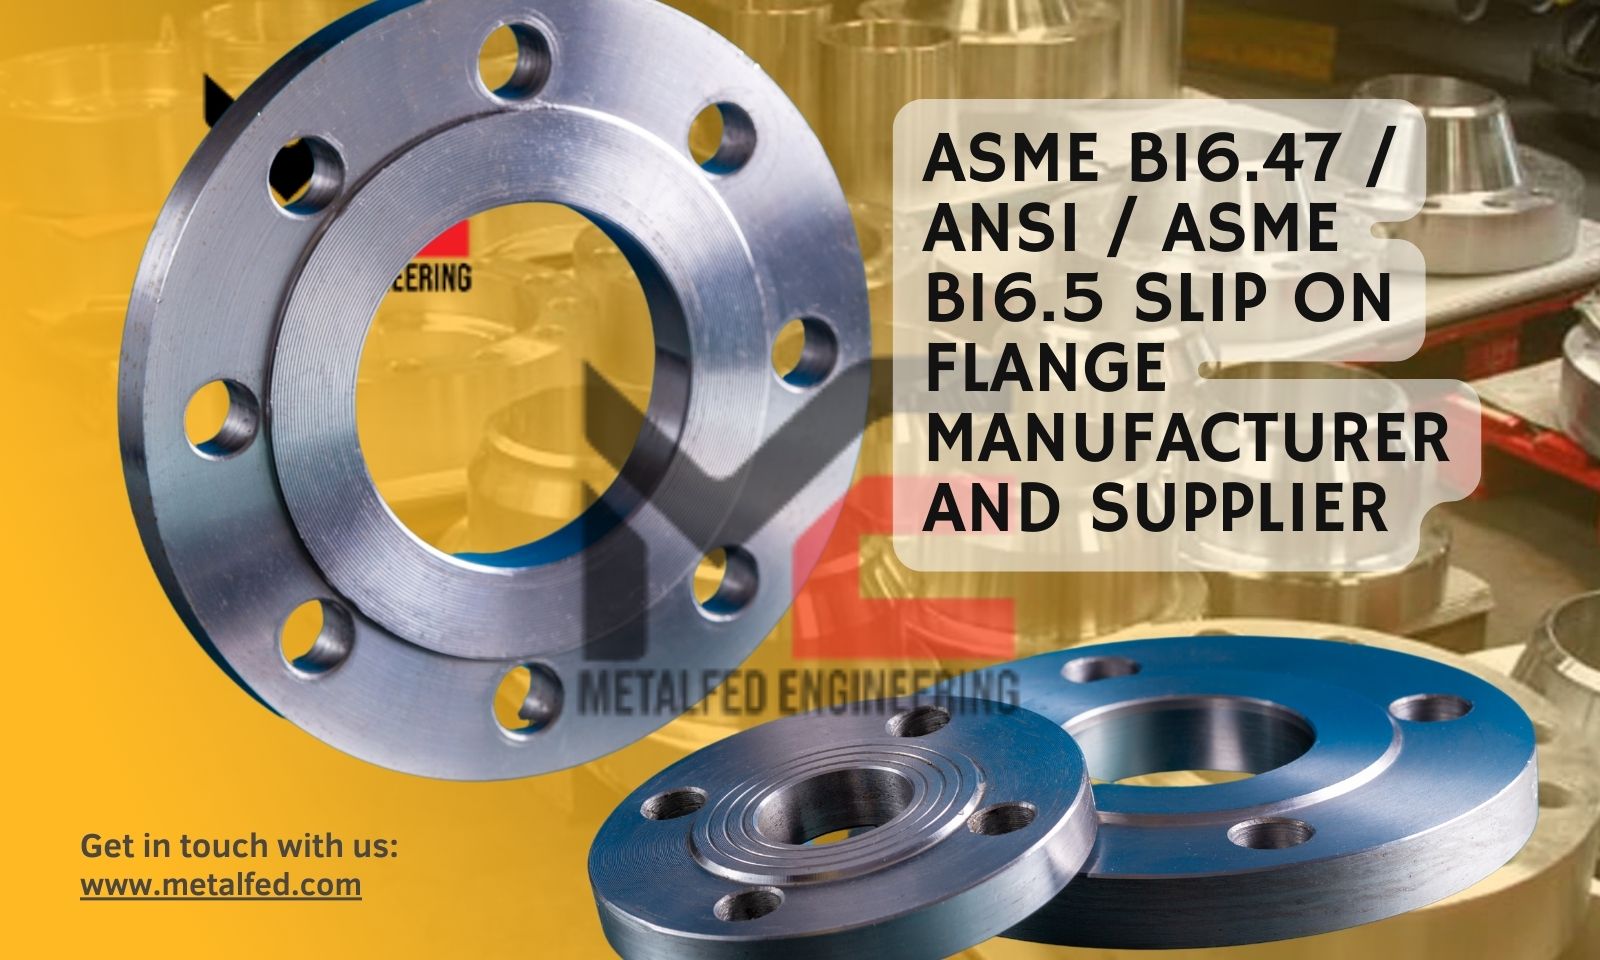 ASME B16.47 / ANSI / ASME B16.5 Slip On Flange Manufacturer and Supplier